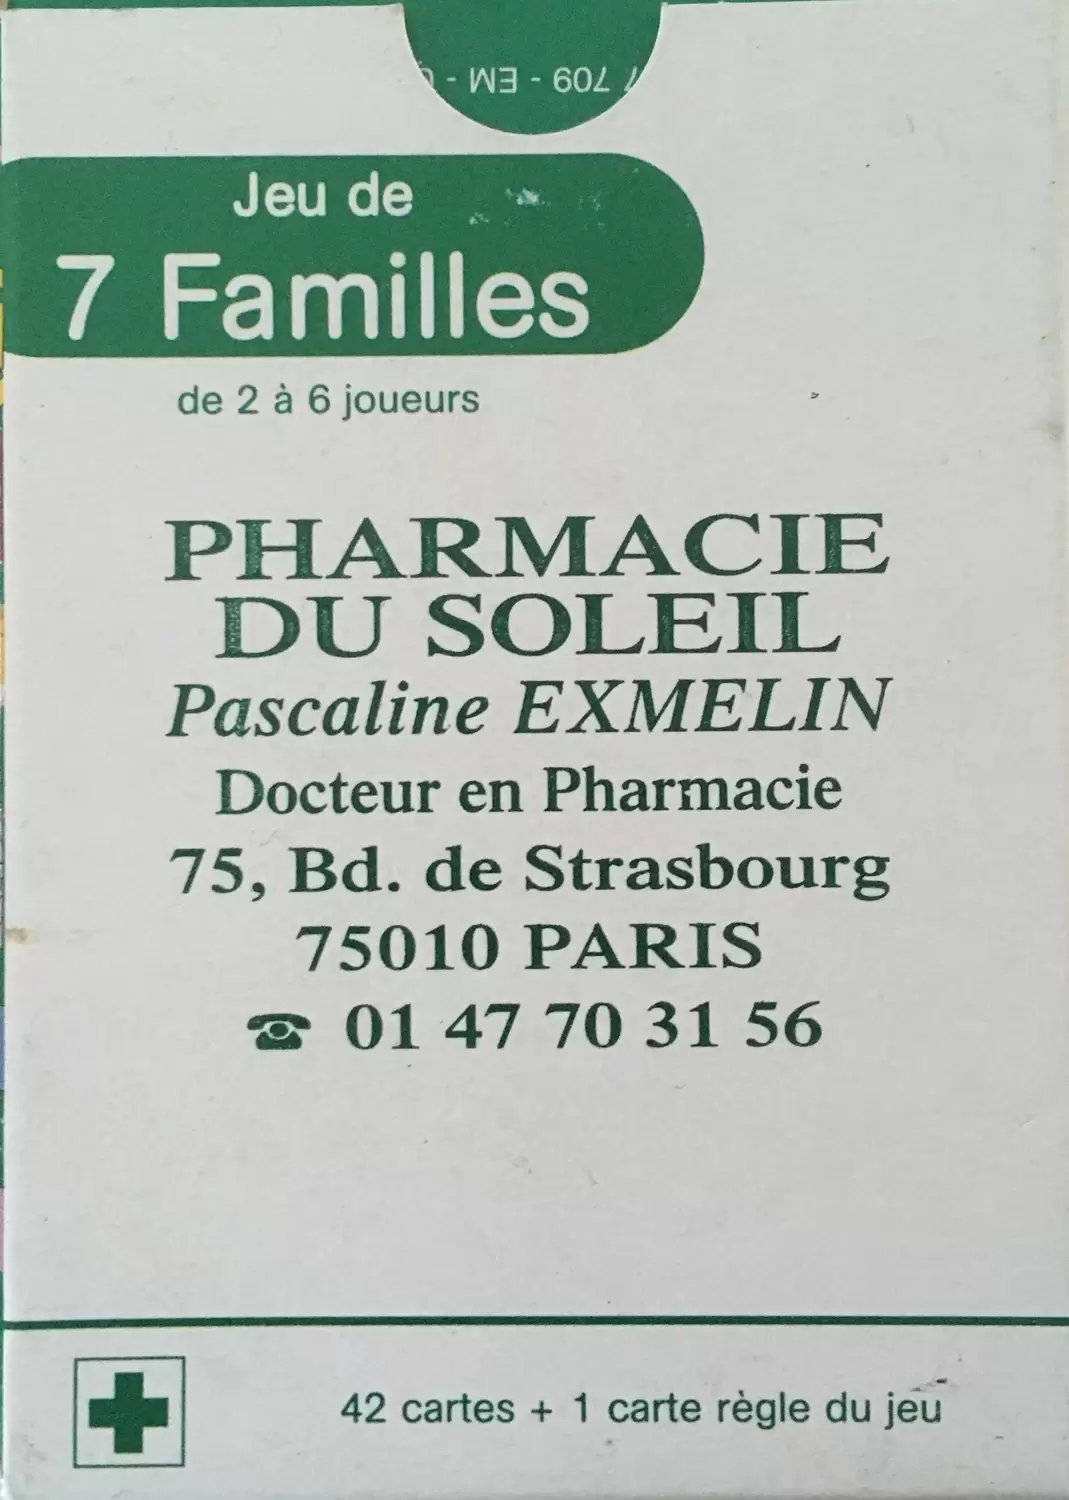 Jeu des 7 Familles - Pharmacie du Soleil